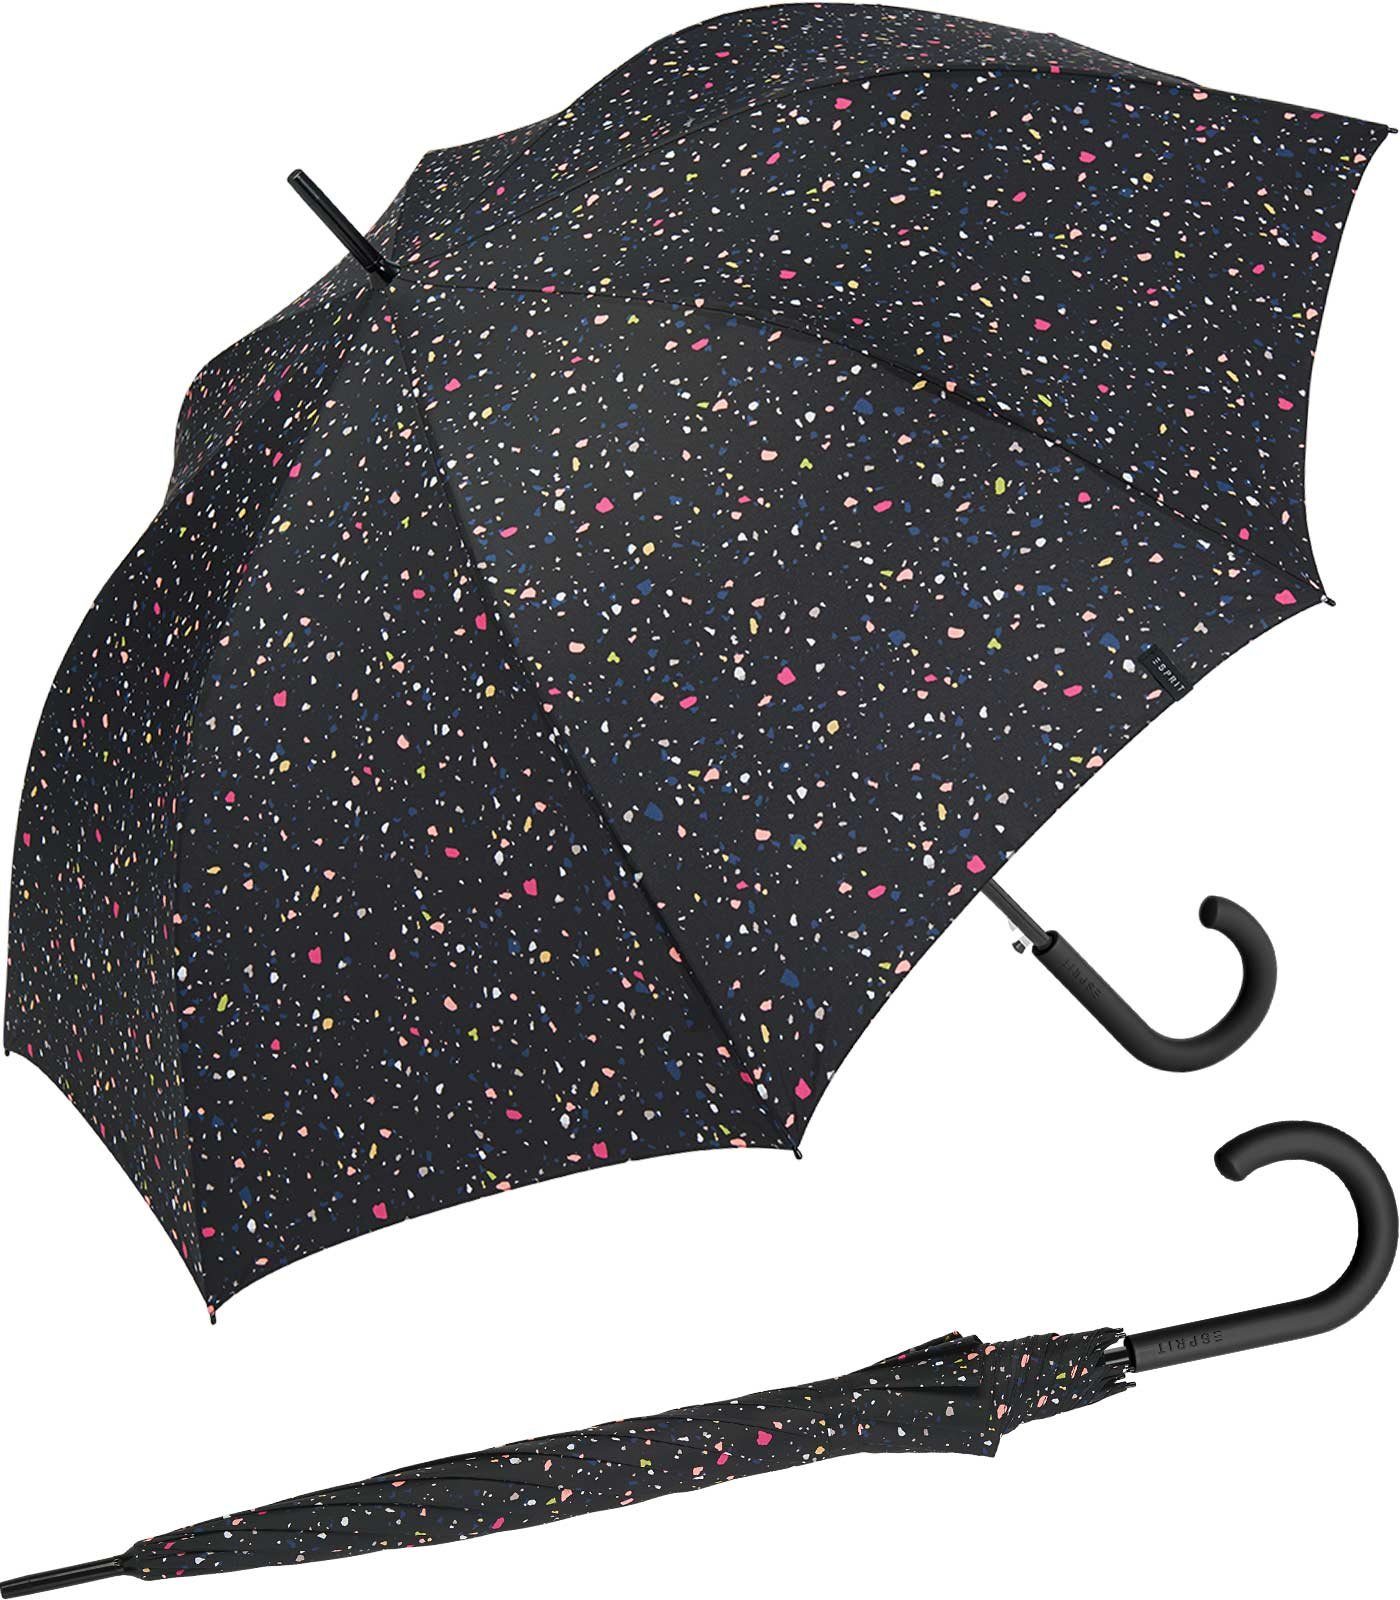 Esprit Dots - Damen groß, schwarz, - Sternenmuster stabil, Auf-Automatik verspieltem Langregenschirm mit Terrazzo